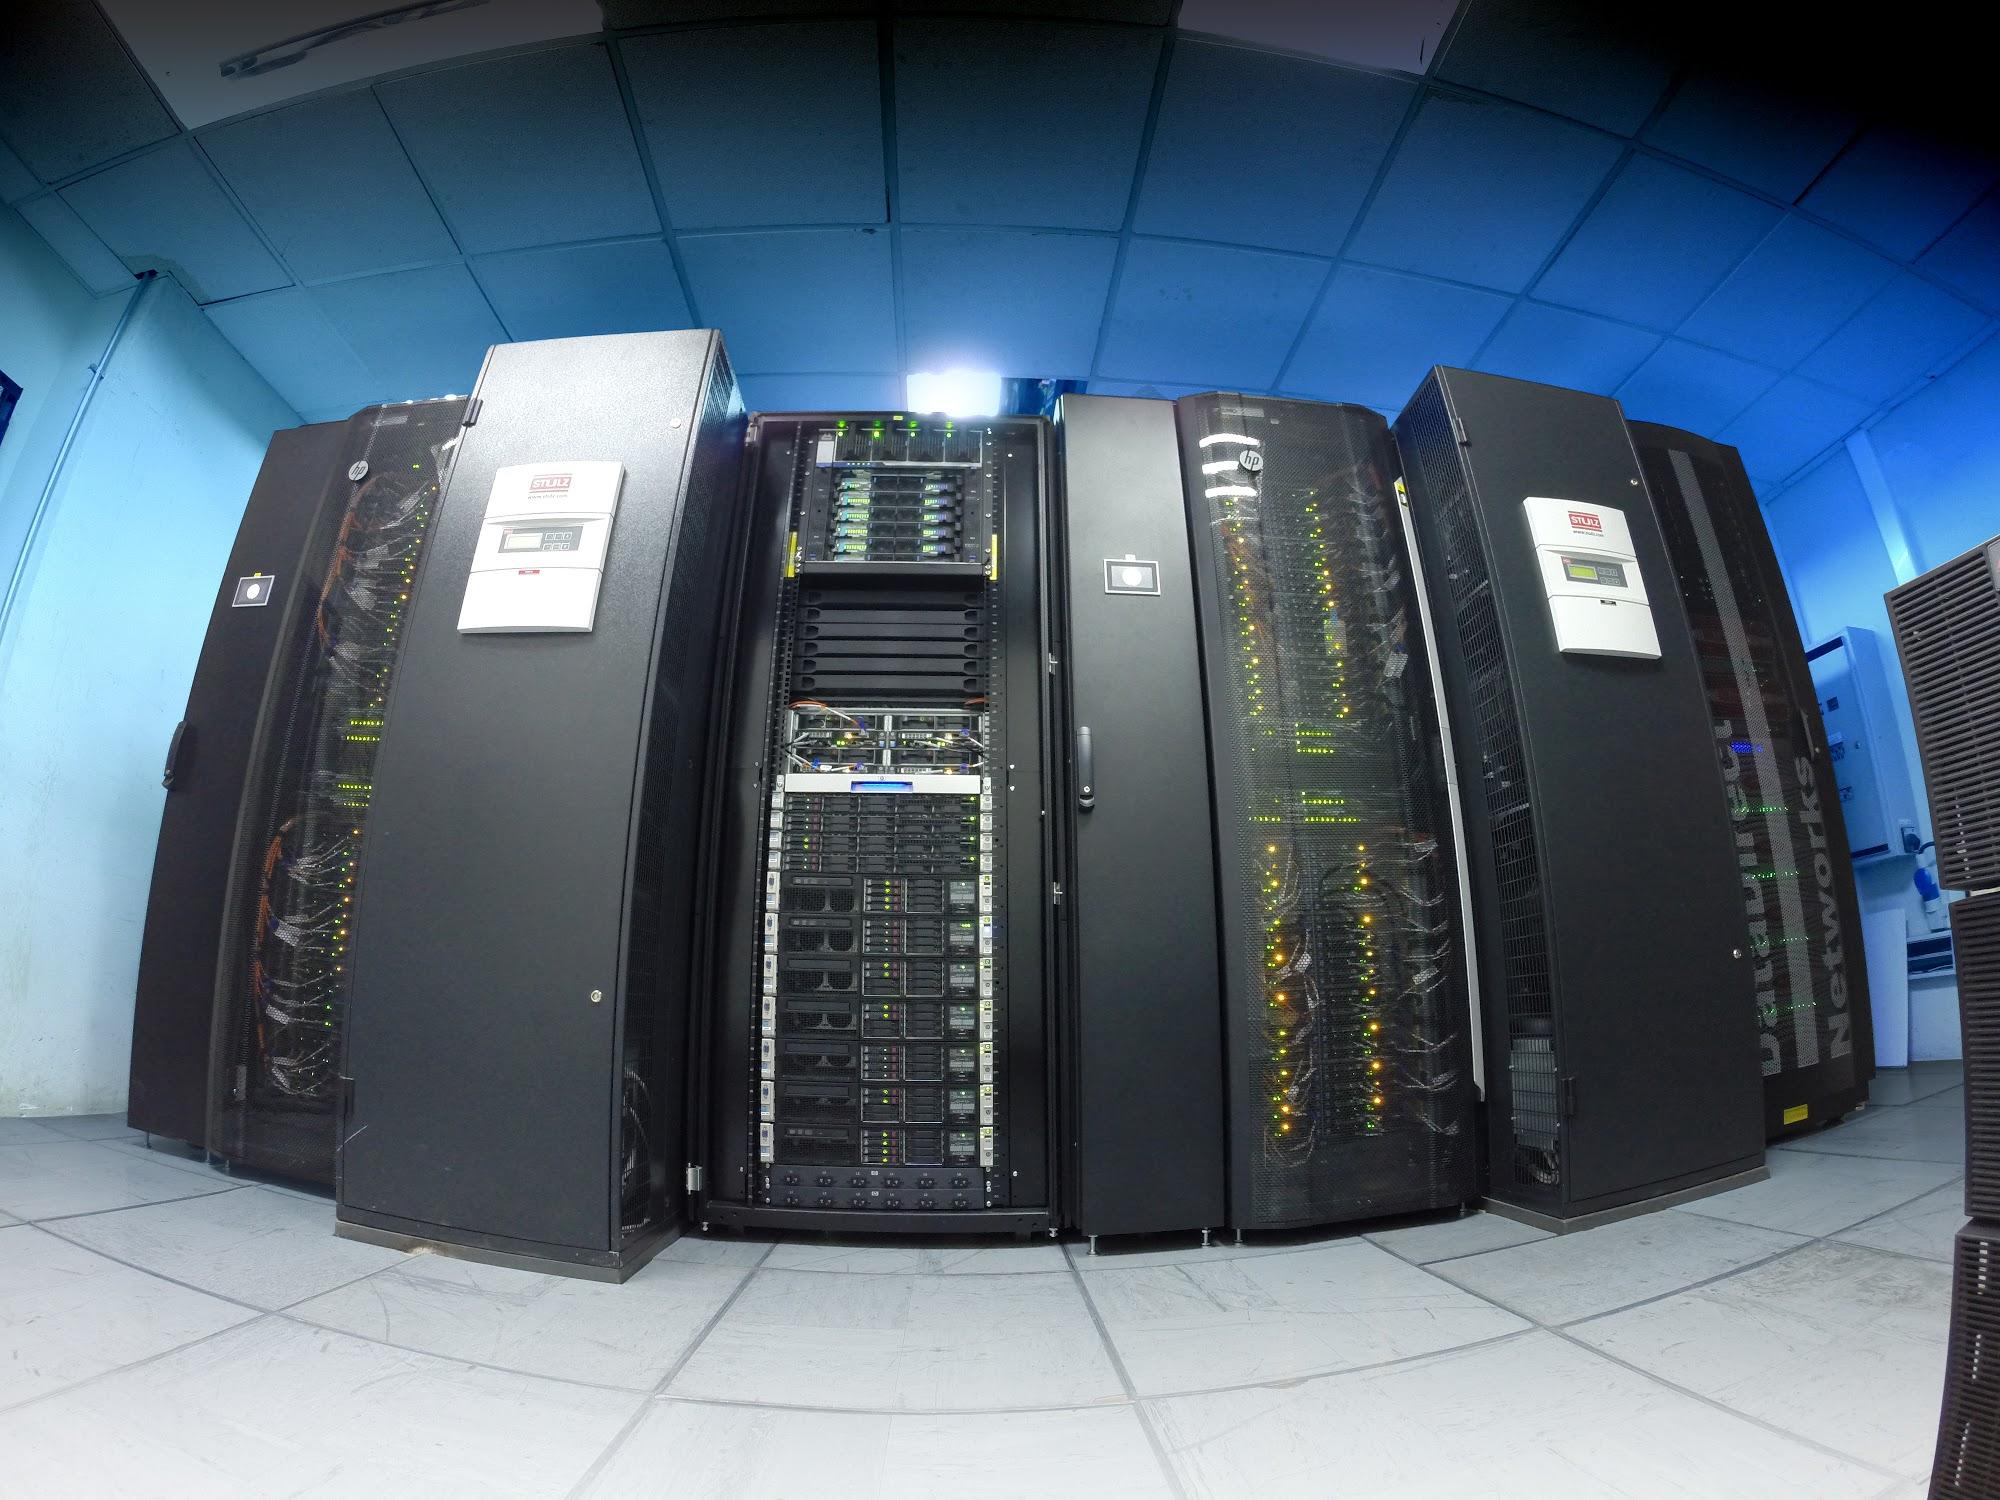 Guacolda-Leftraru es el supercomputador más potente a nivel nacional, y es administrado por el Laboratorio Nacional de Computación de Alto Rendimiento (NLHPC).